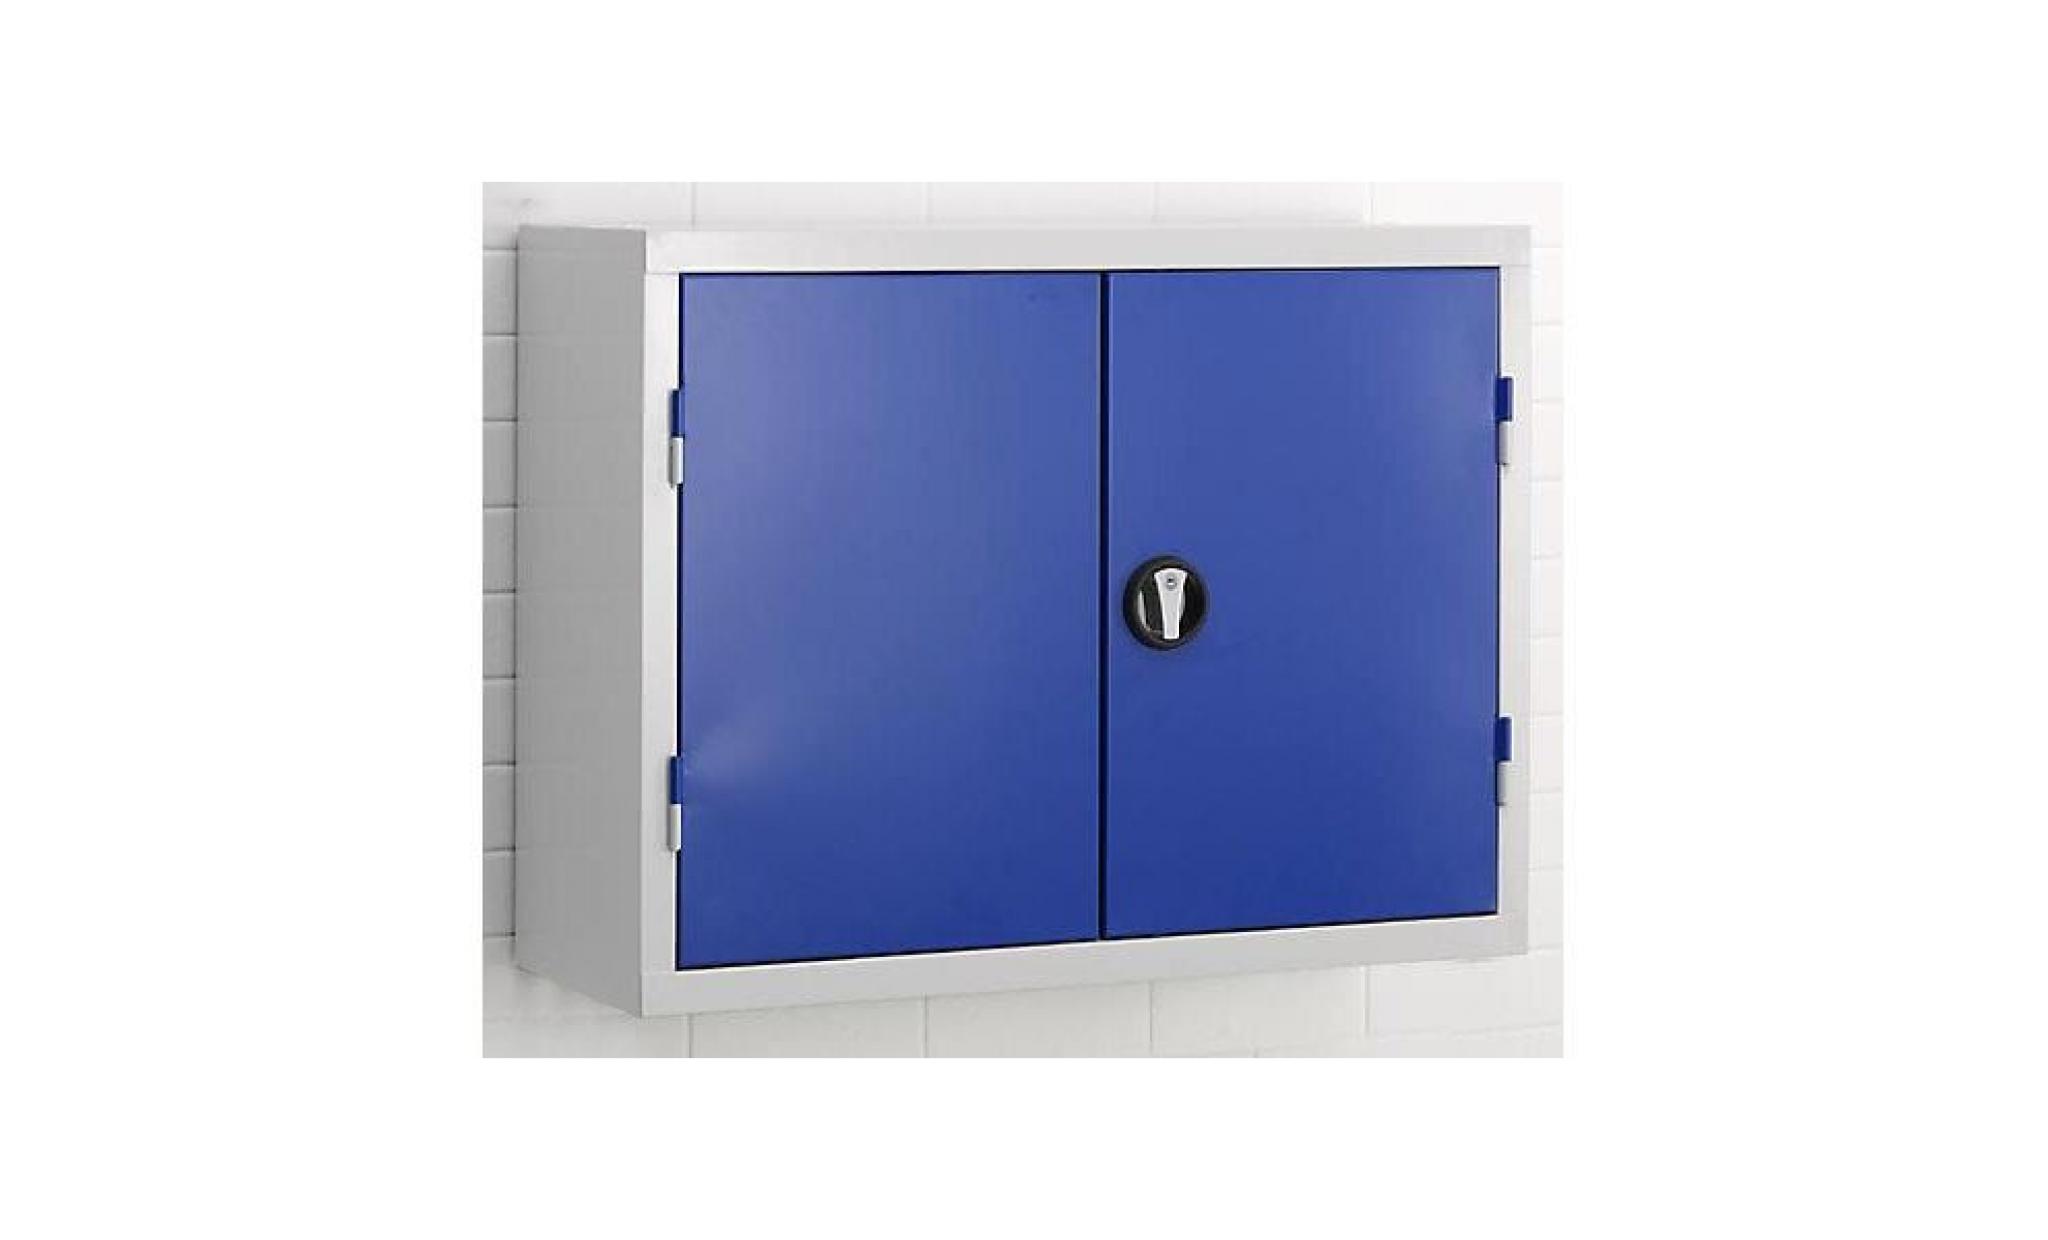 armoire à outils murale   plaques perforées à l'intérieur des portes   bleu gentiane ral 5010   armoire murale armoire métallique